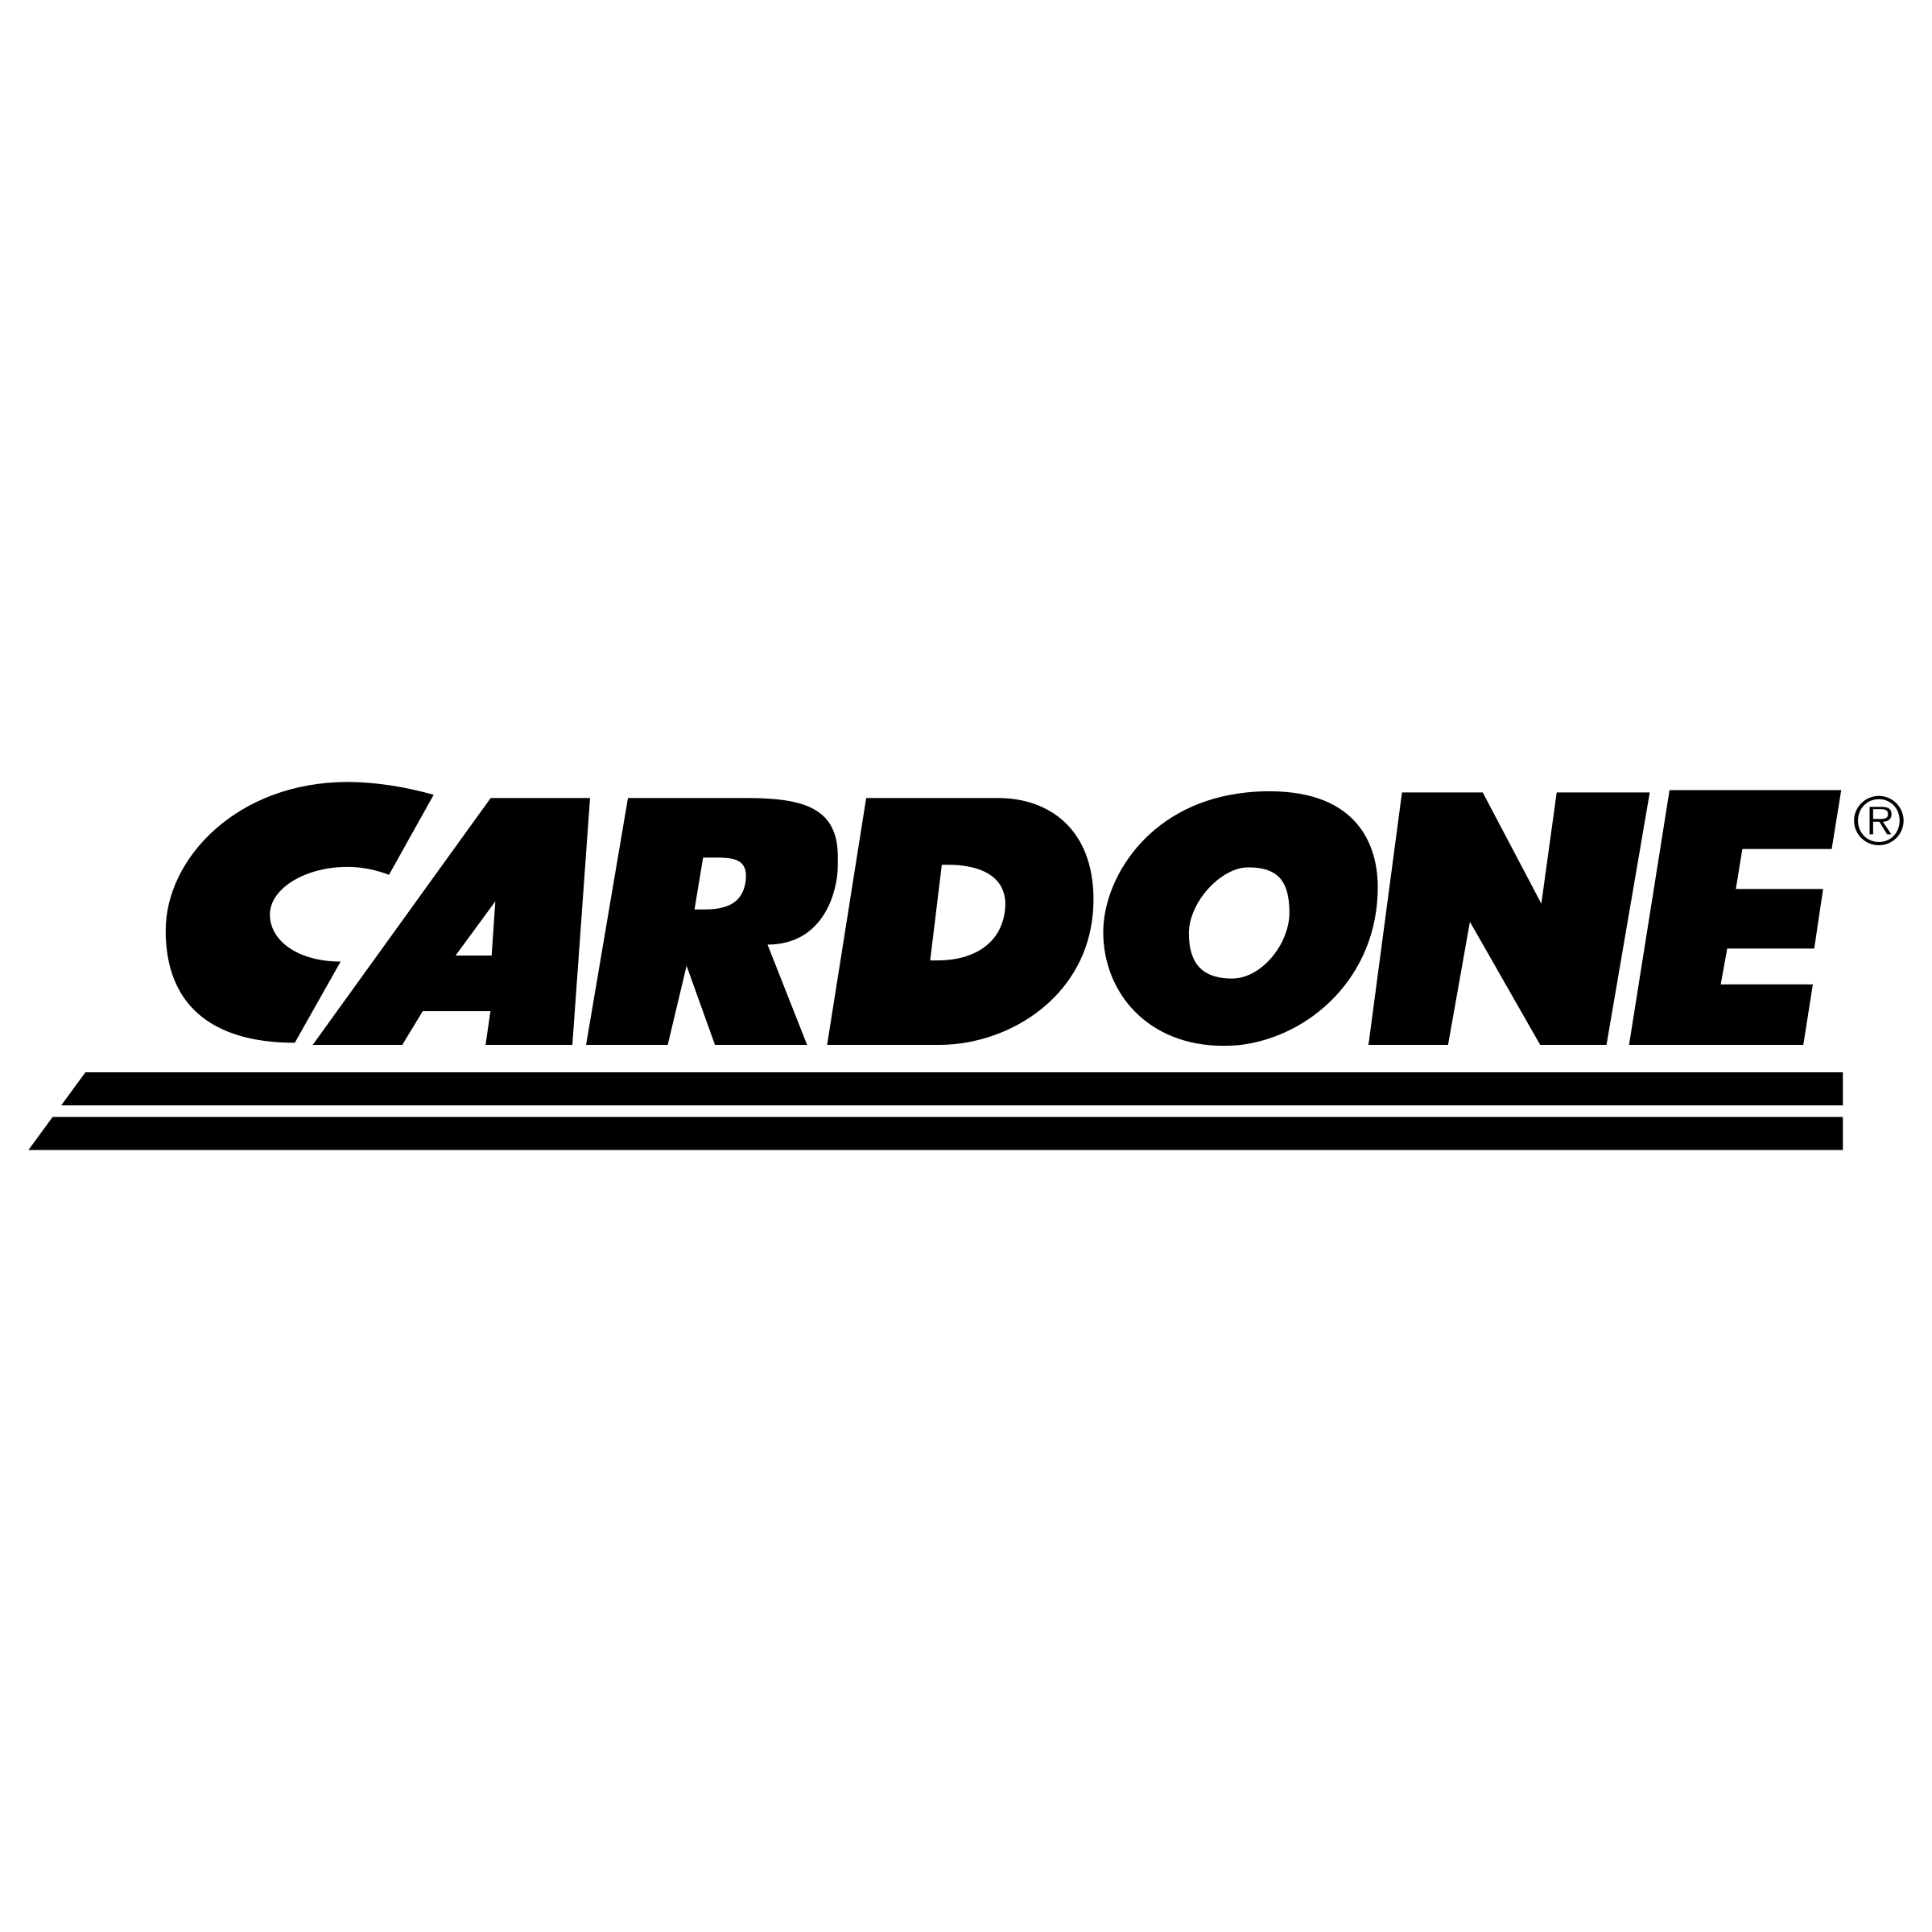 Cardone Logo - Cardone Logo PNG Transparent & SVG Vector - Freebie Supply